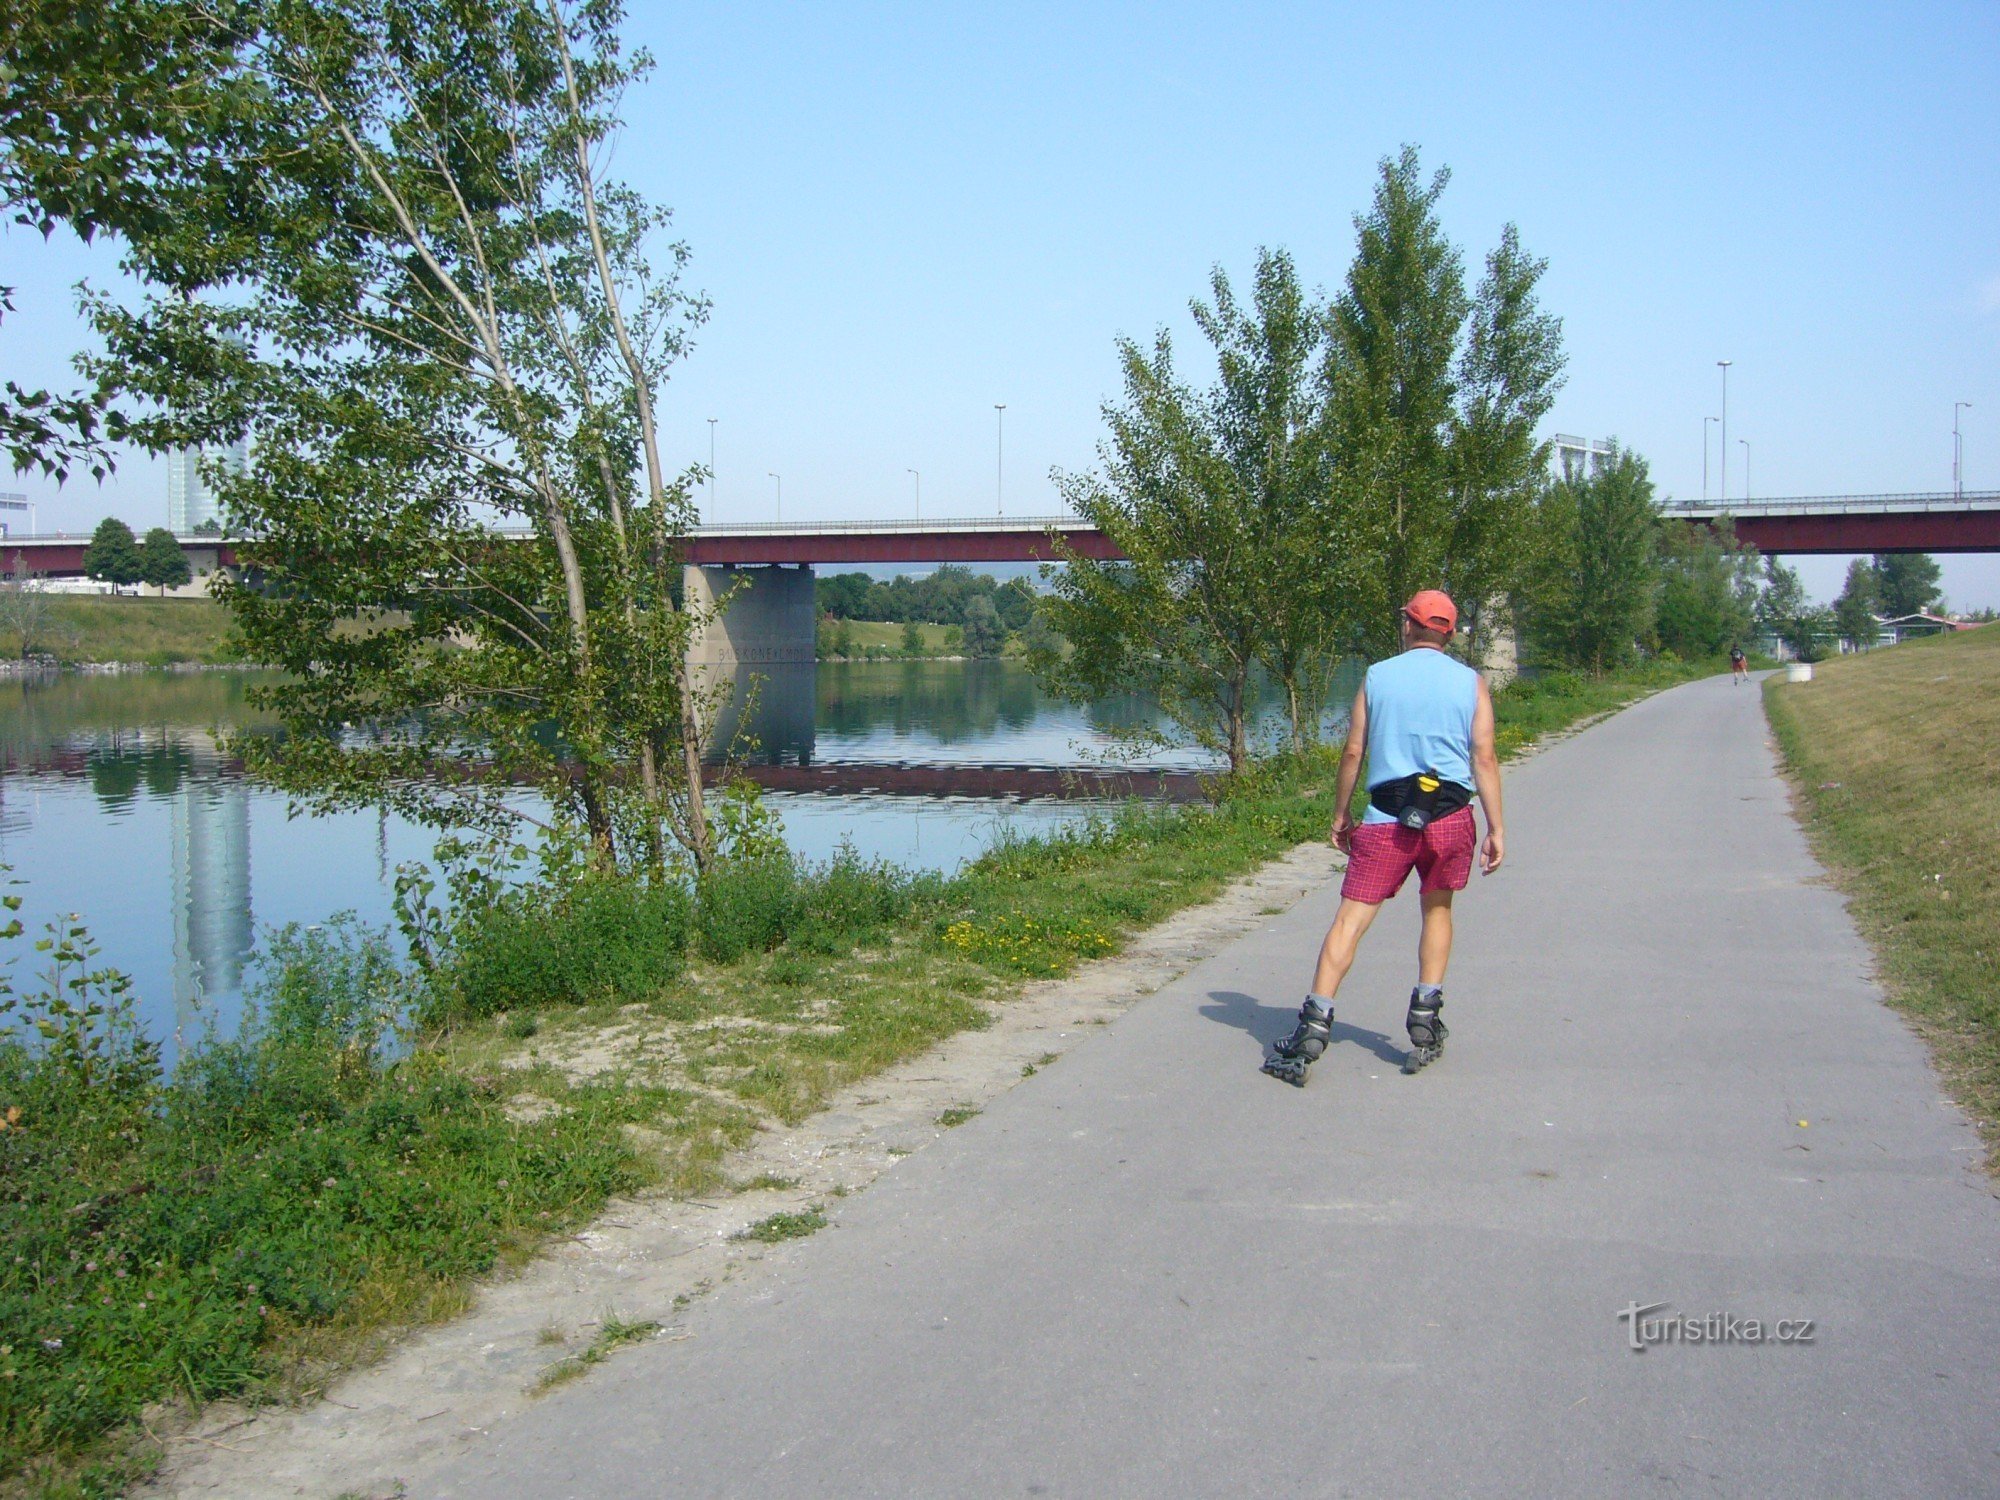 wienska cykelvägar längs Donau på In-lines - när du väl provat det kommer du att vilja komma tillbaka